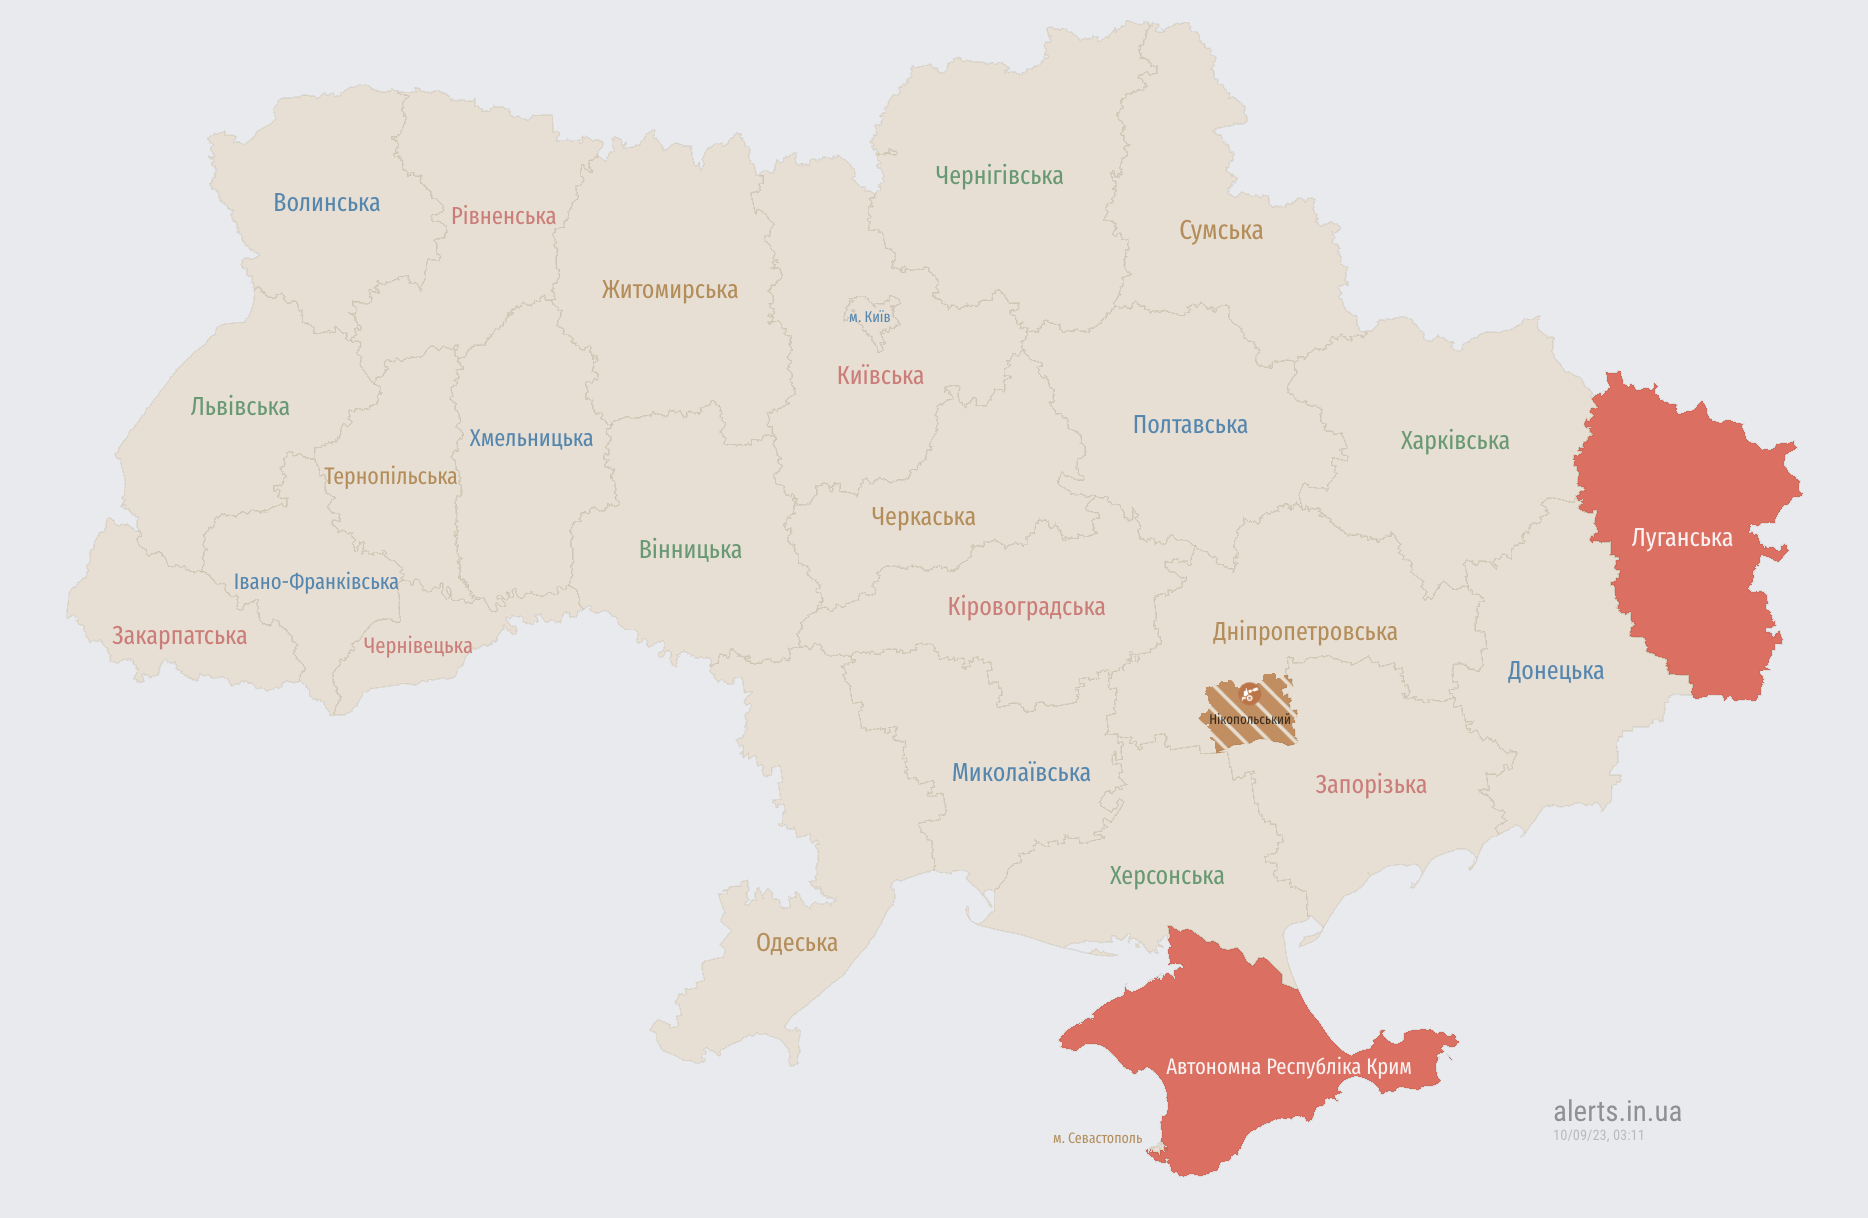 Воздушная тревога на севере и в центре Украины: есть угроза ударных БПЛА